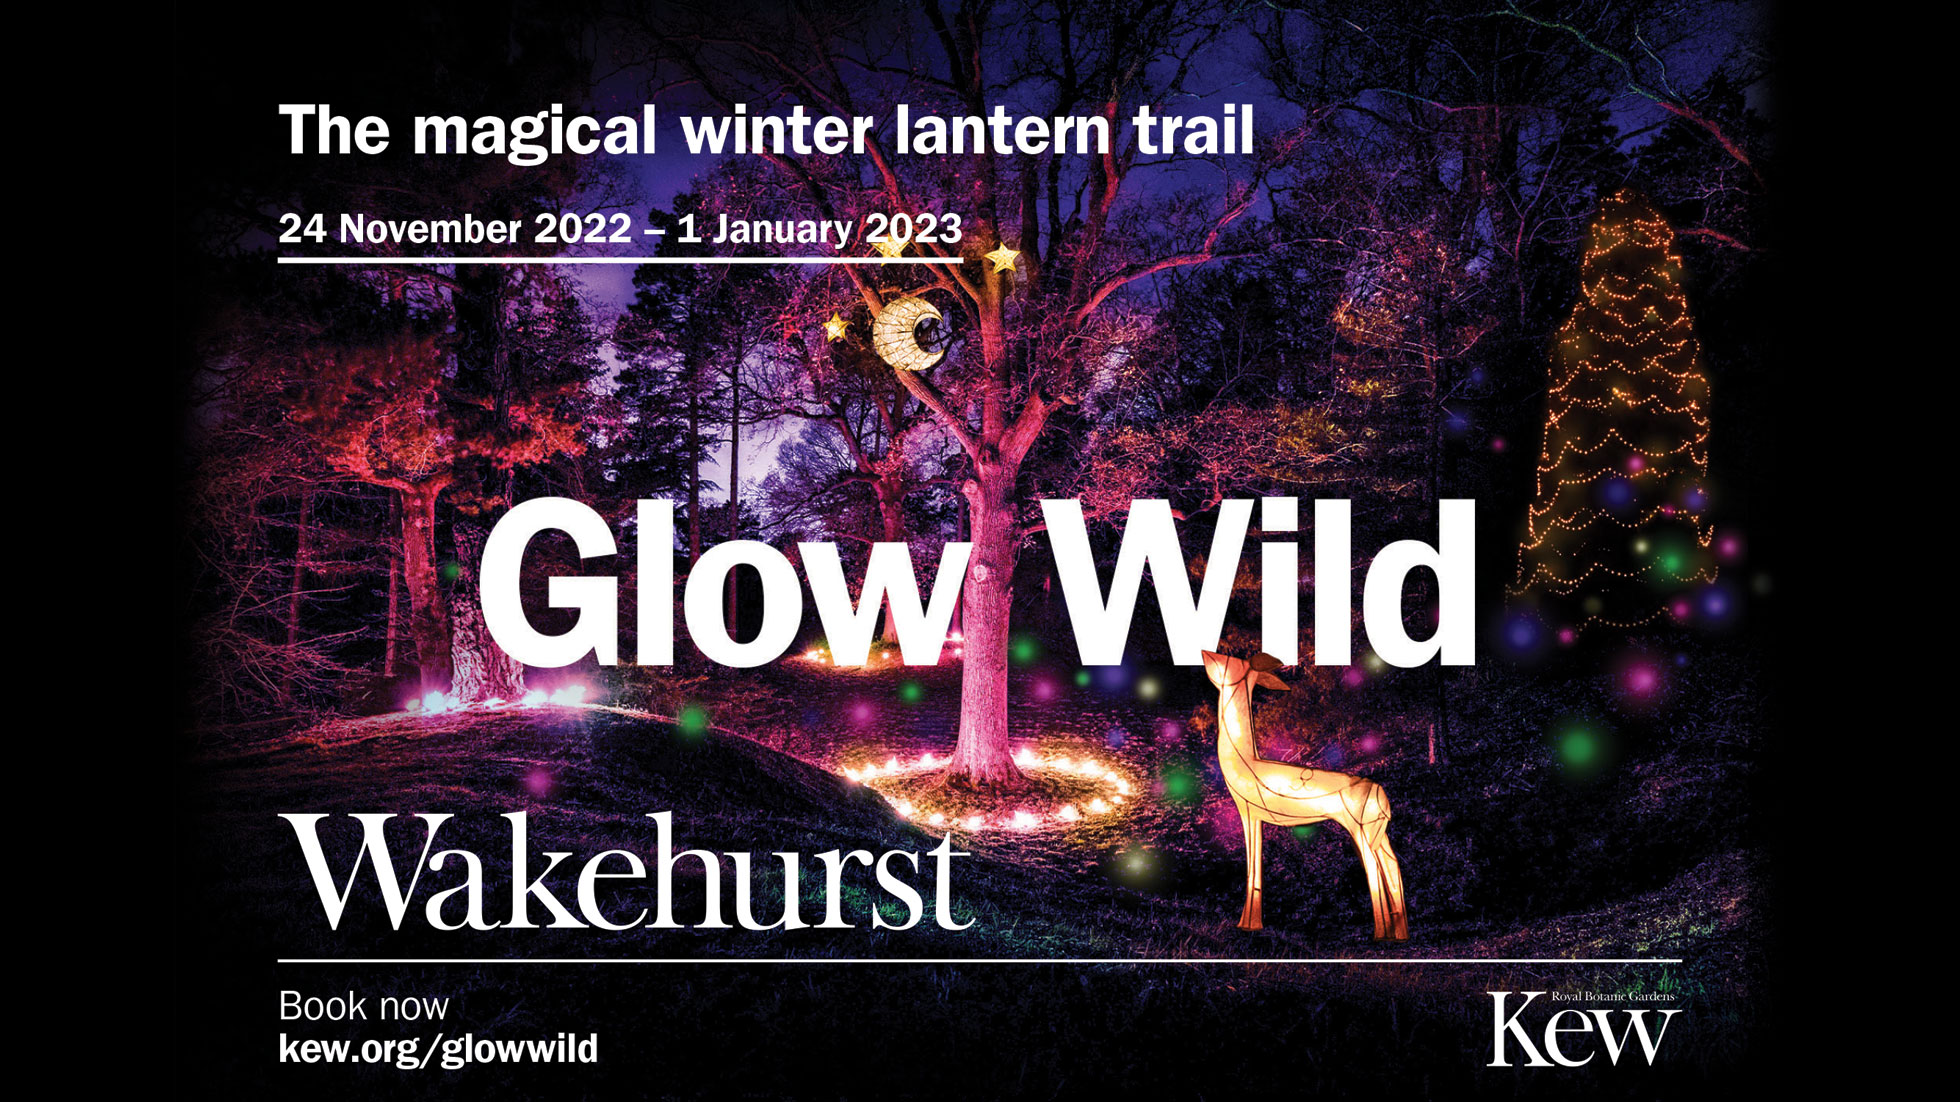 Glow Wild At Wakehurst, Kew’s Wild Botanic Garden In Sussex RH Uncovered